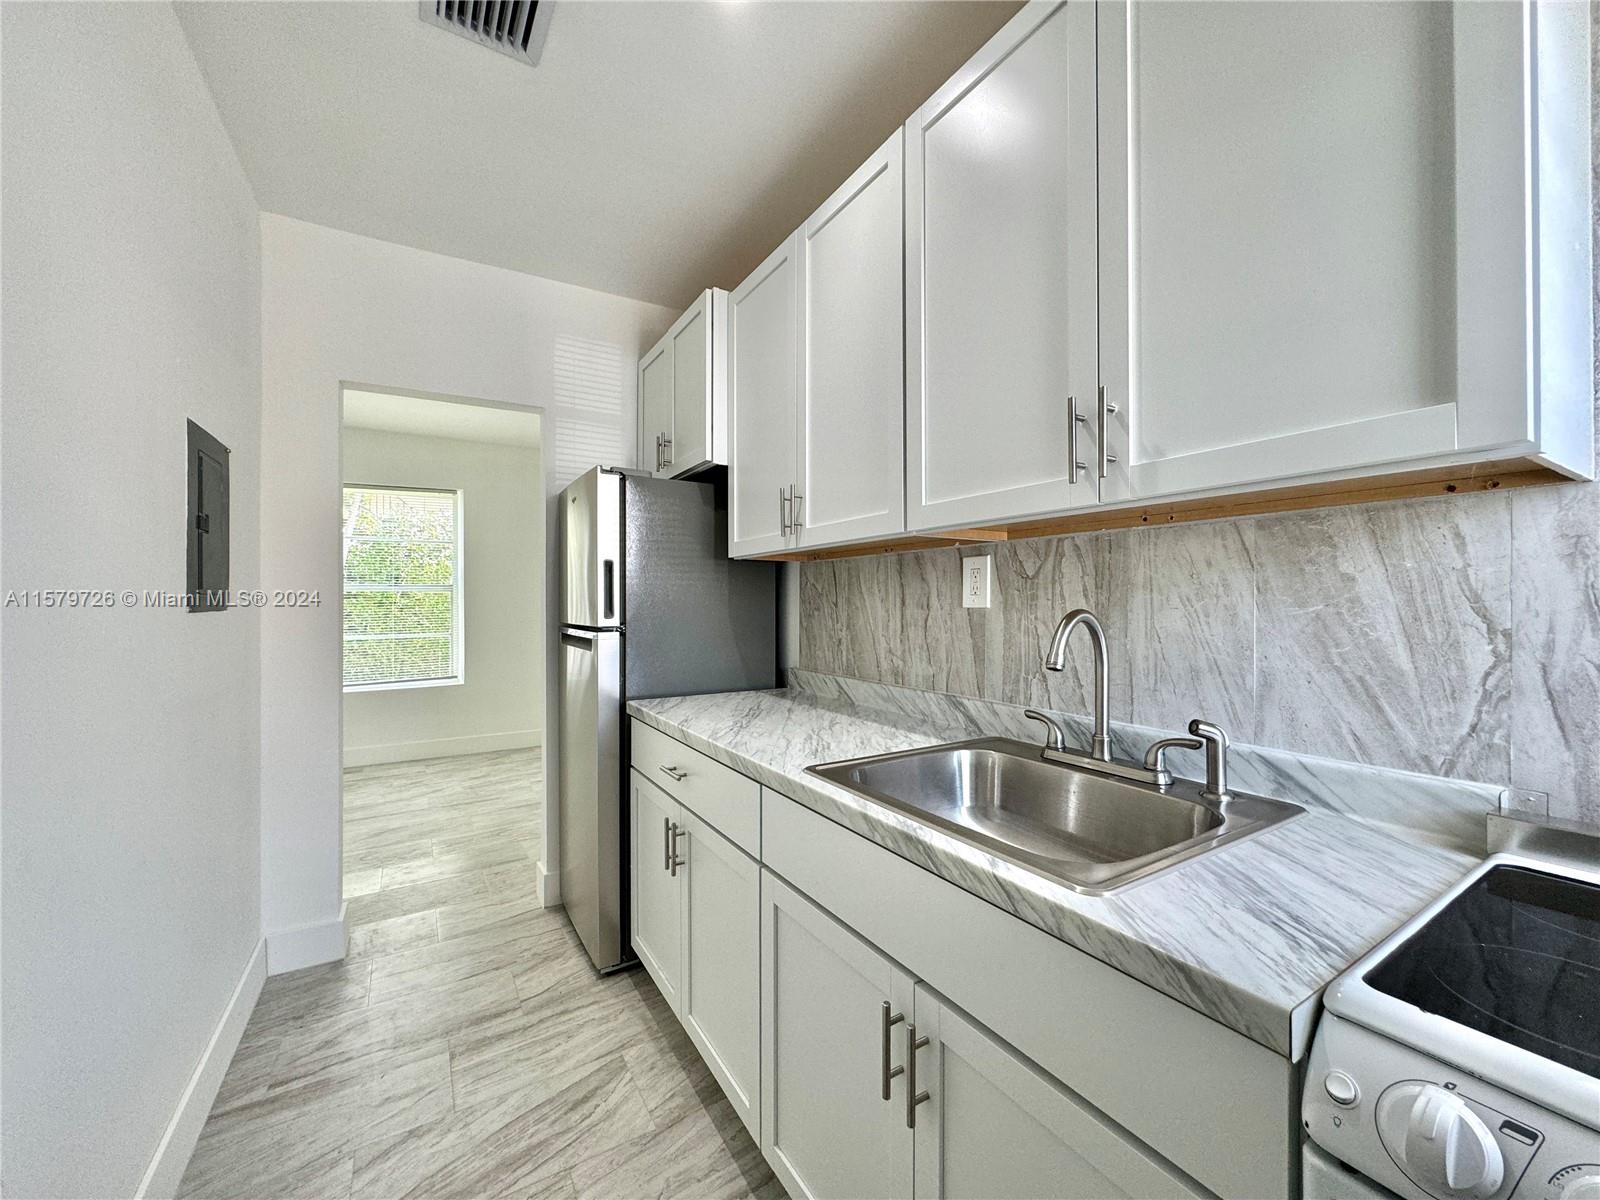 Rental Property at 6955 Rue Vendome 2, Miami Beach, Miami-Dade County, Florida - Bedrooms: 1 
Bathrooms: 1  - $1,990 MO.